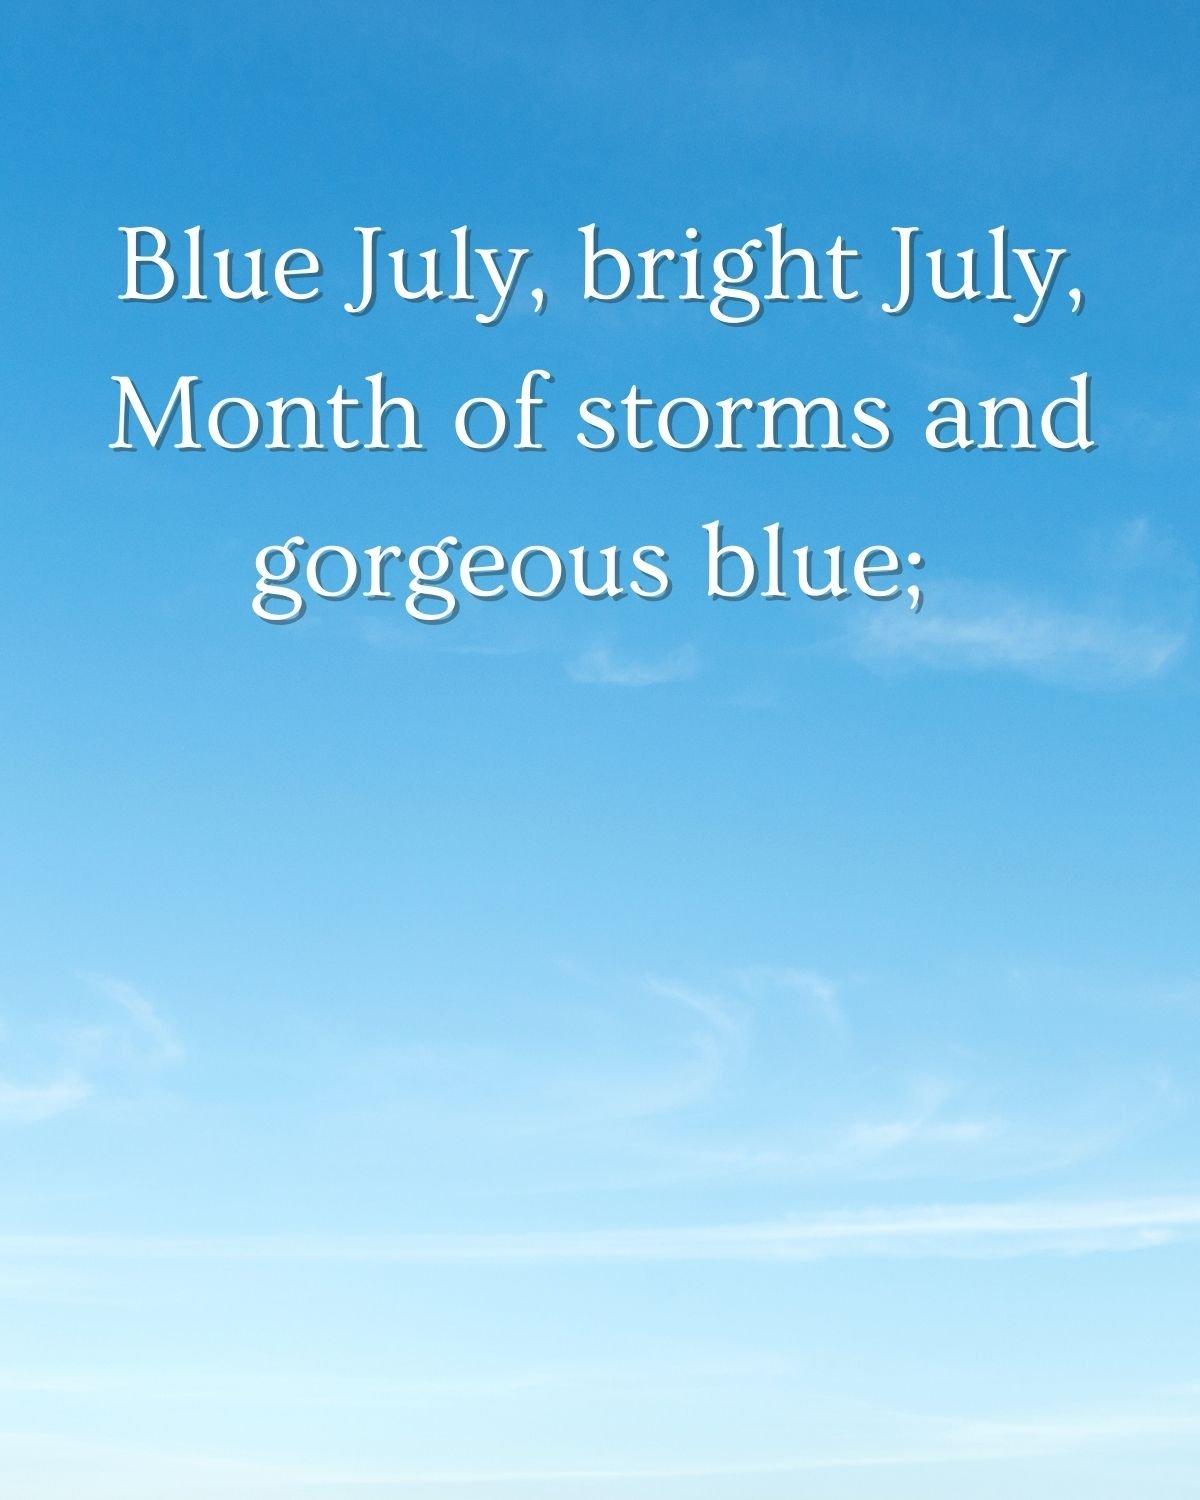 Blue sky in July Stanzas 